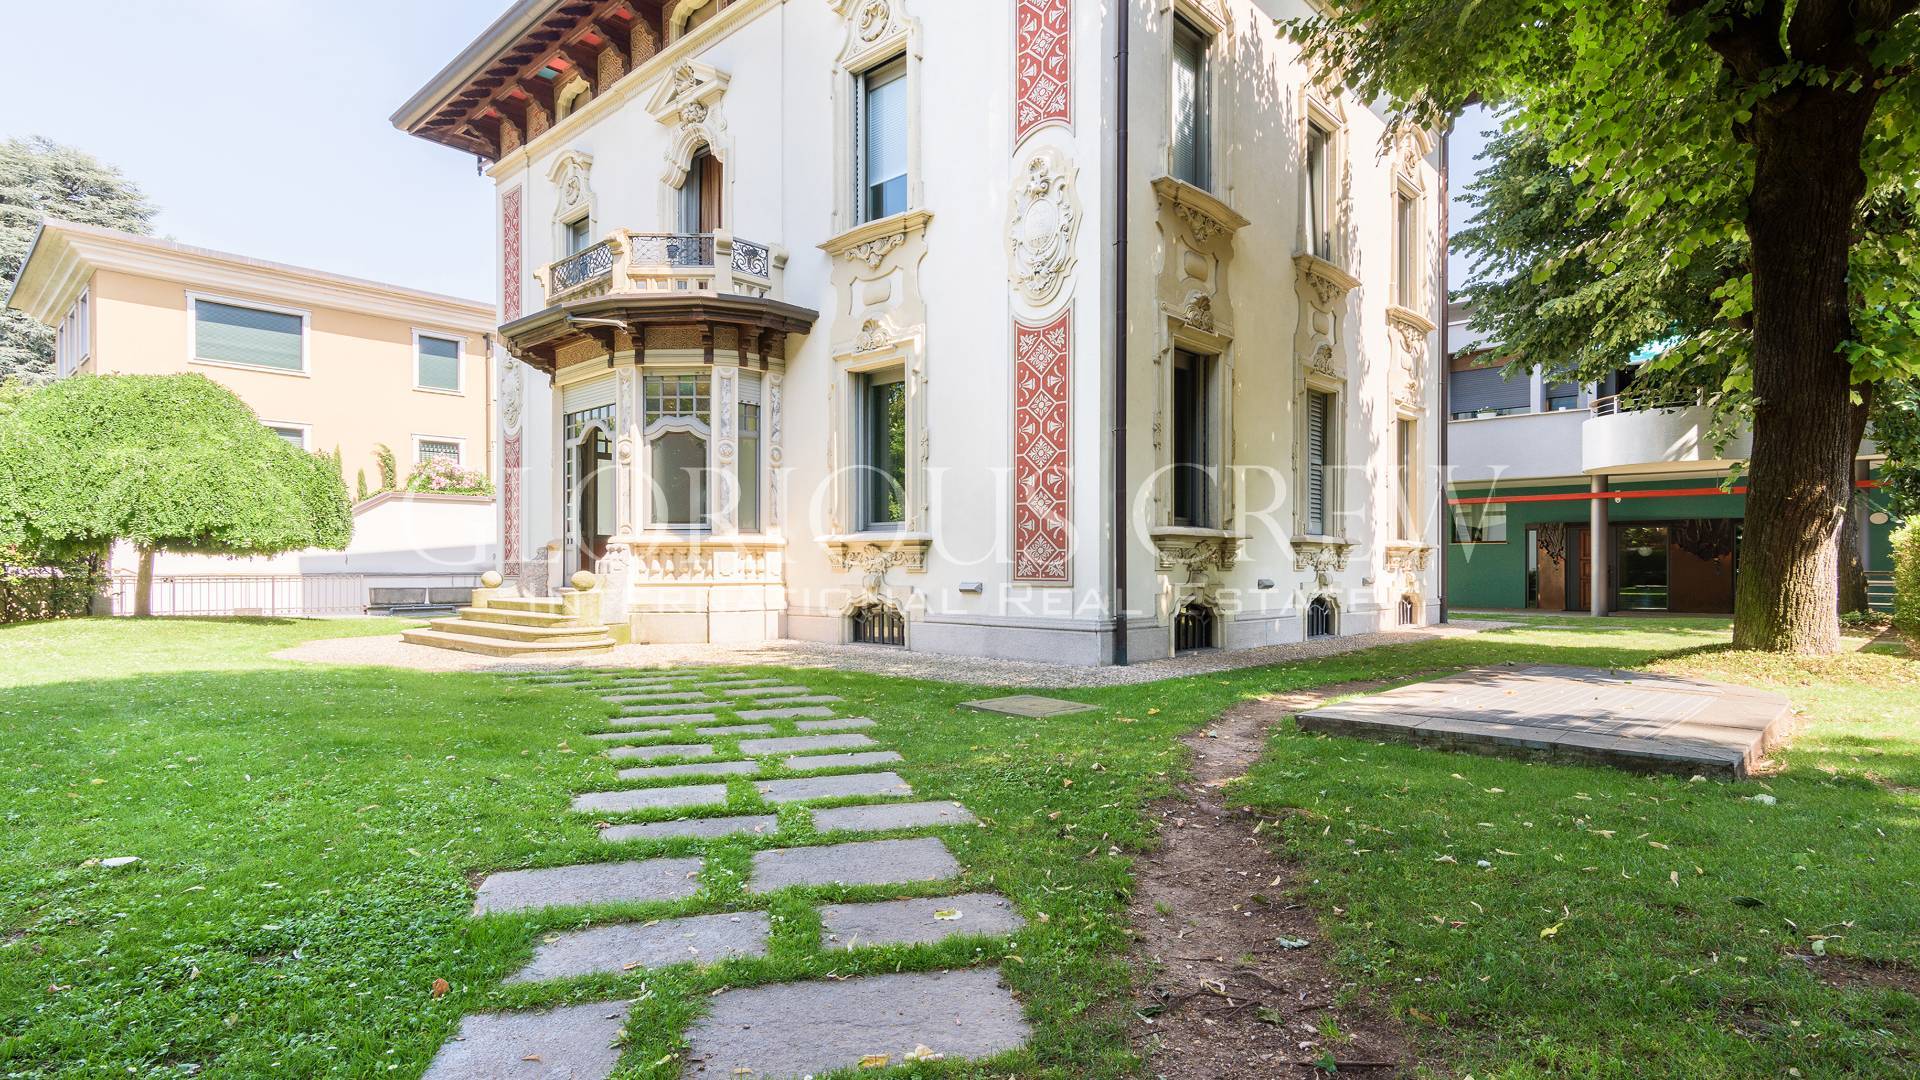 Villa in Vendita a Monza: 5 locali, 1300 mq - Foto 8